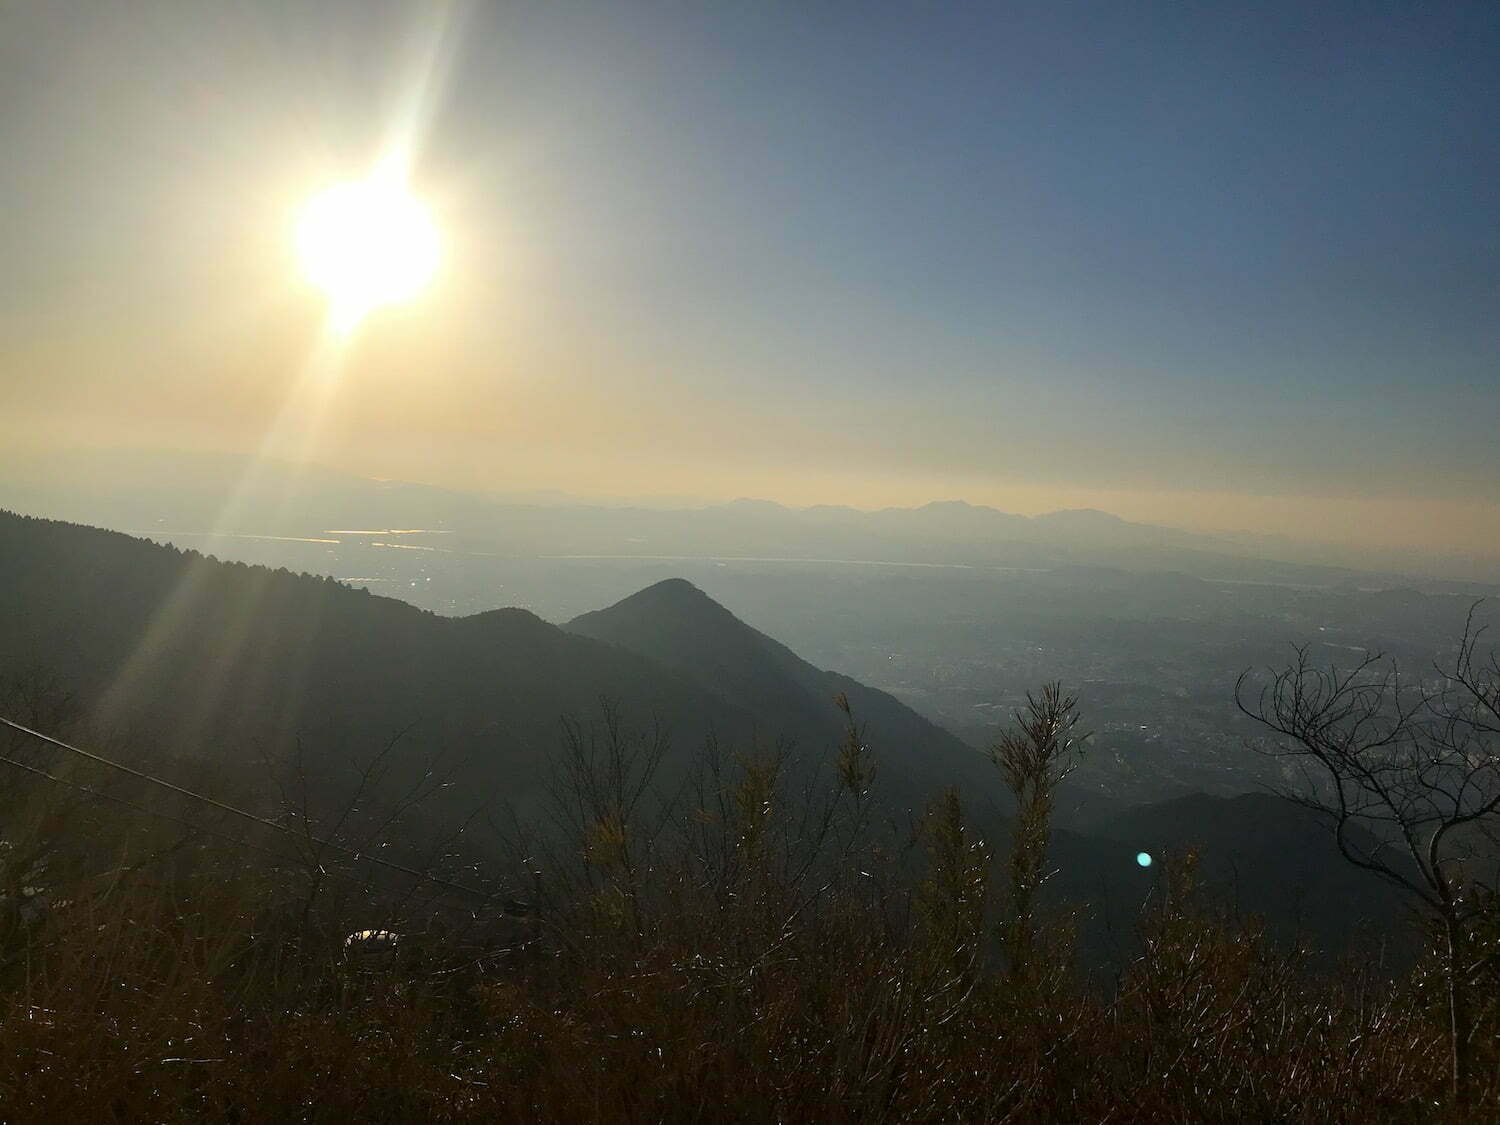 The view from Mt. Sarakura